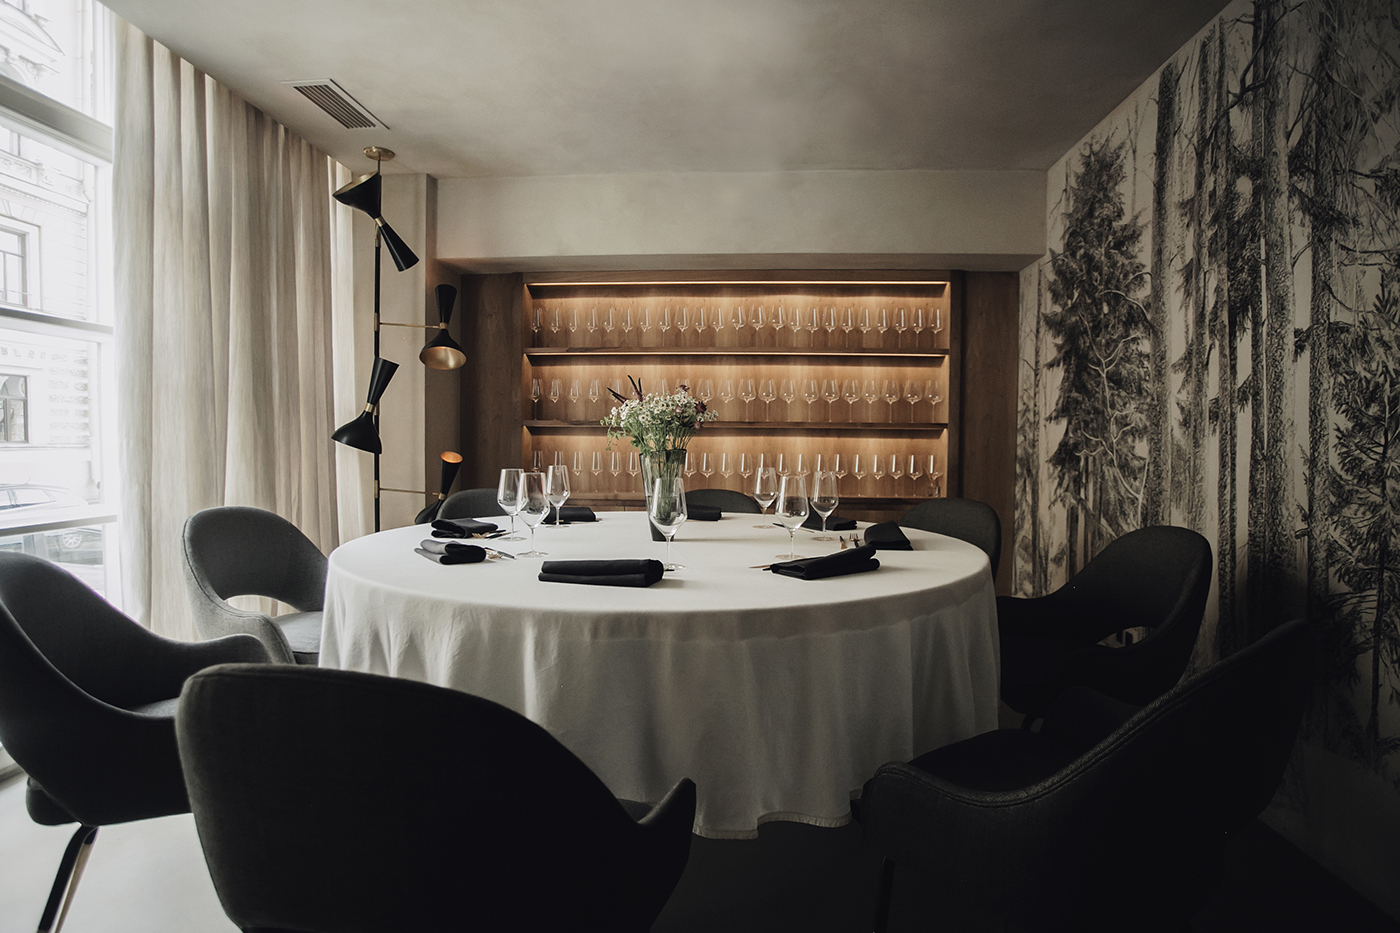 Luxury Interior Design Restaurant In Russia